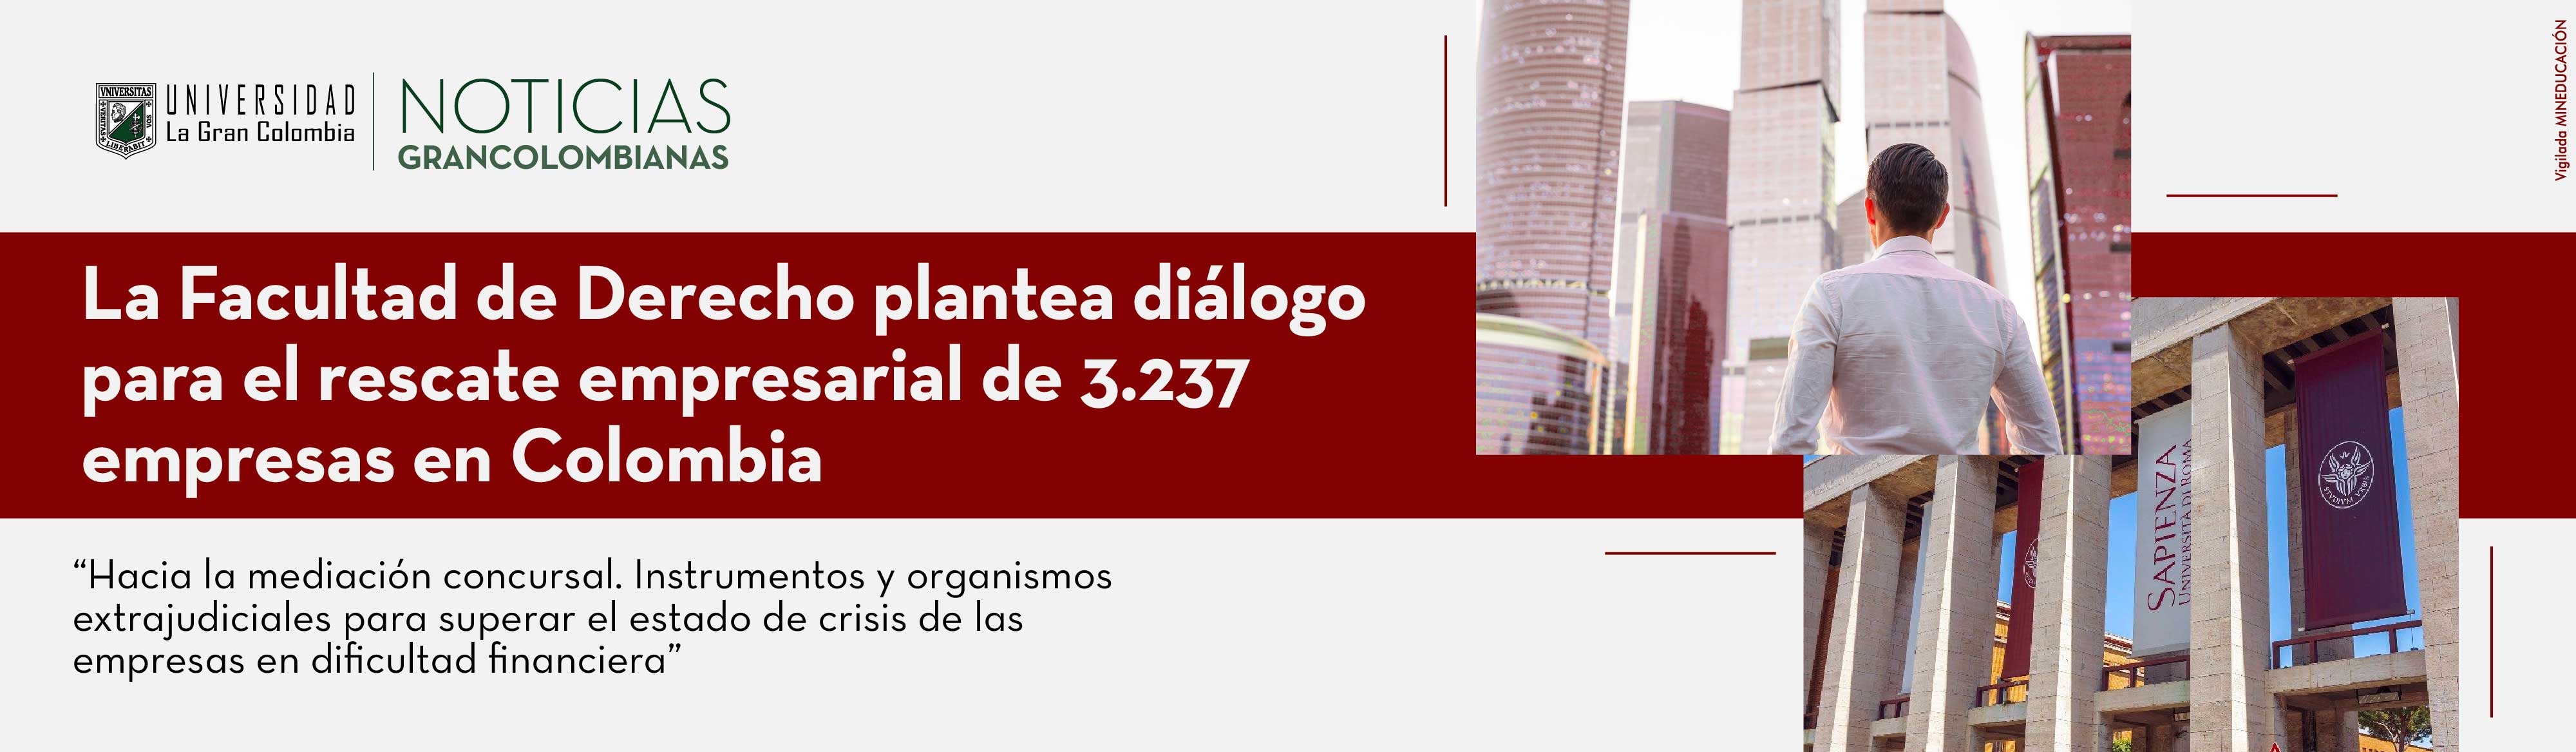 La Facultad de Derecho plantea diálogo para el rescate empresarial de 3.237 empresas en Colombia